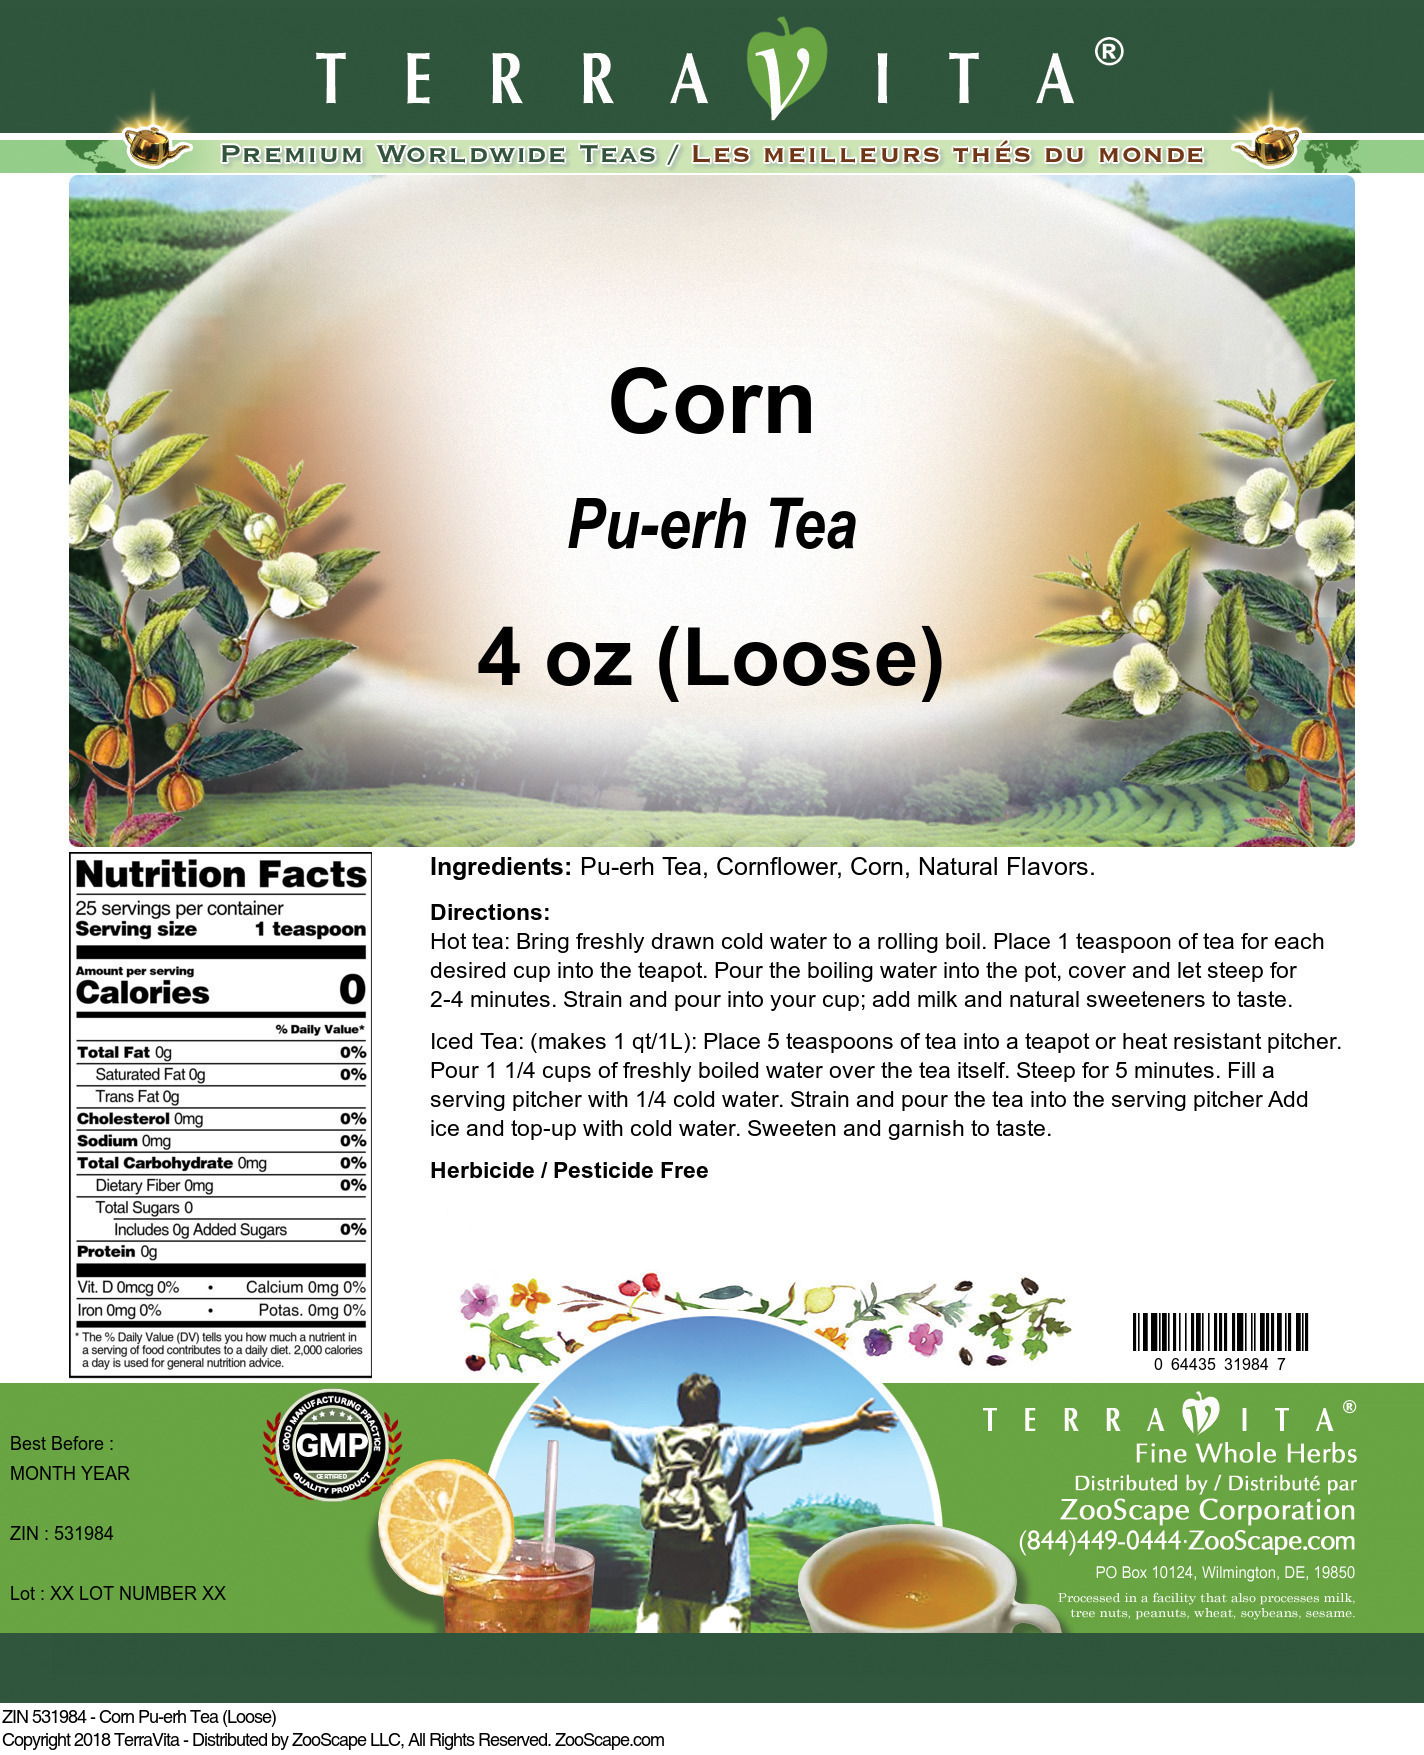 Corn Pu-erh Tea (Loose) - Label